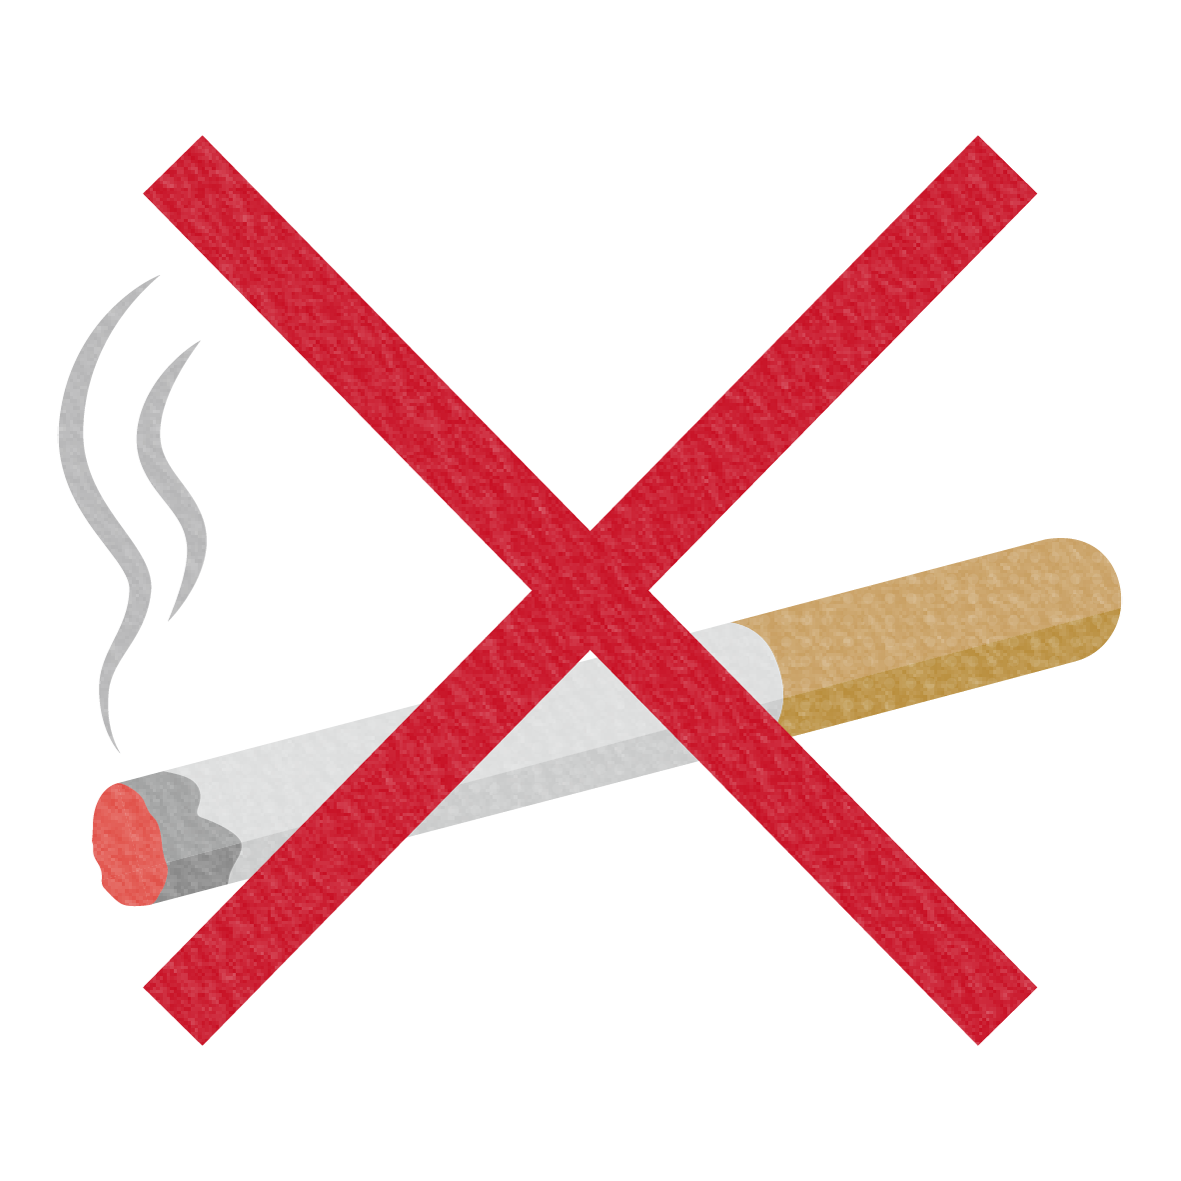 タバコ禁止をシンプルなイラストで表現しました。
<br>
こちらのイラストは無料でお使いいただけるので、お店で分煙を知らせるマークとしてお使いいただけます♪